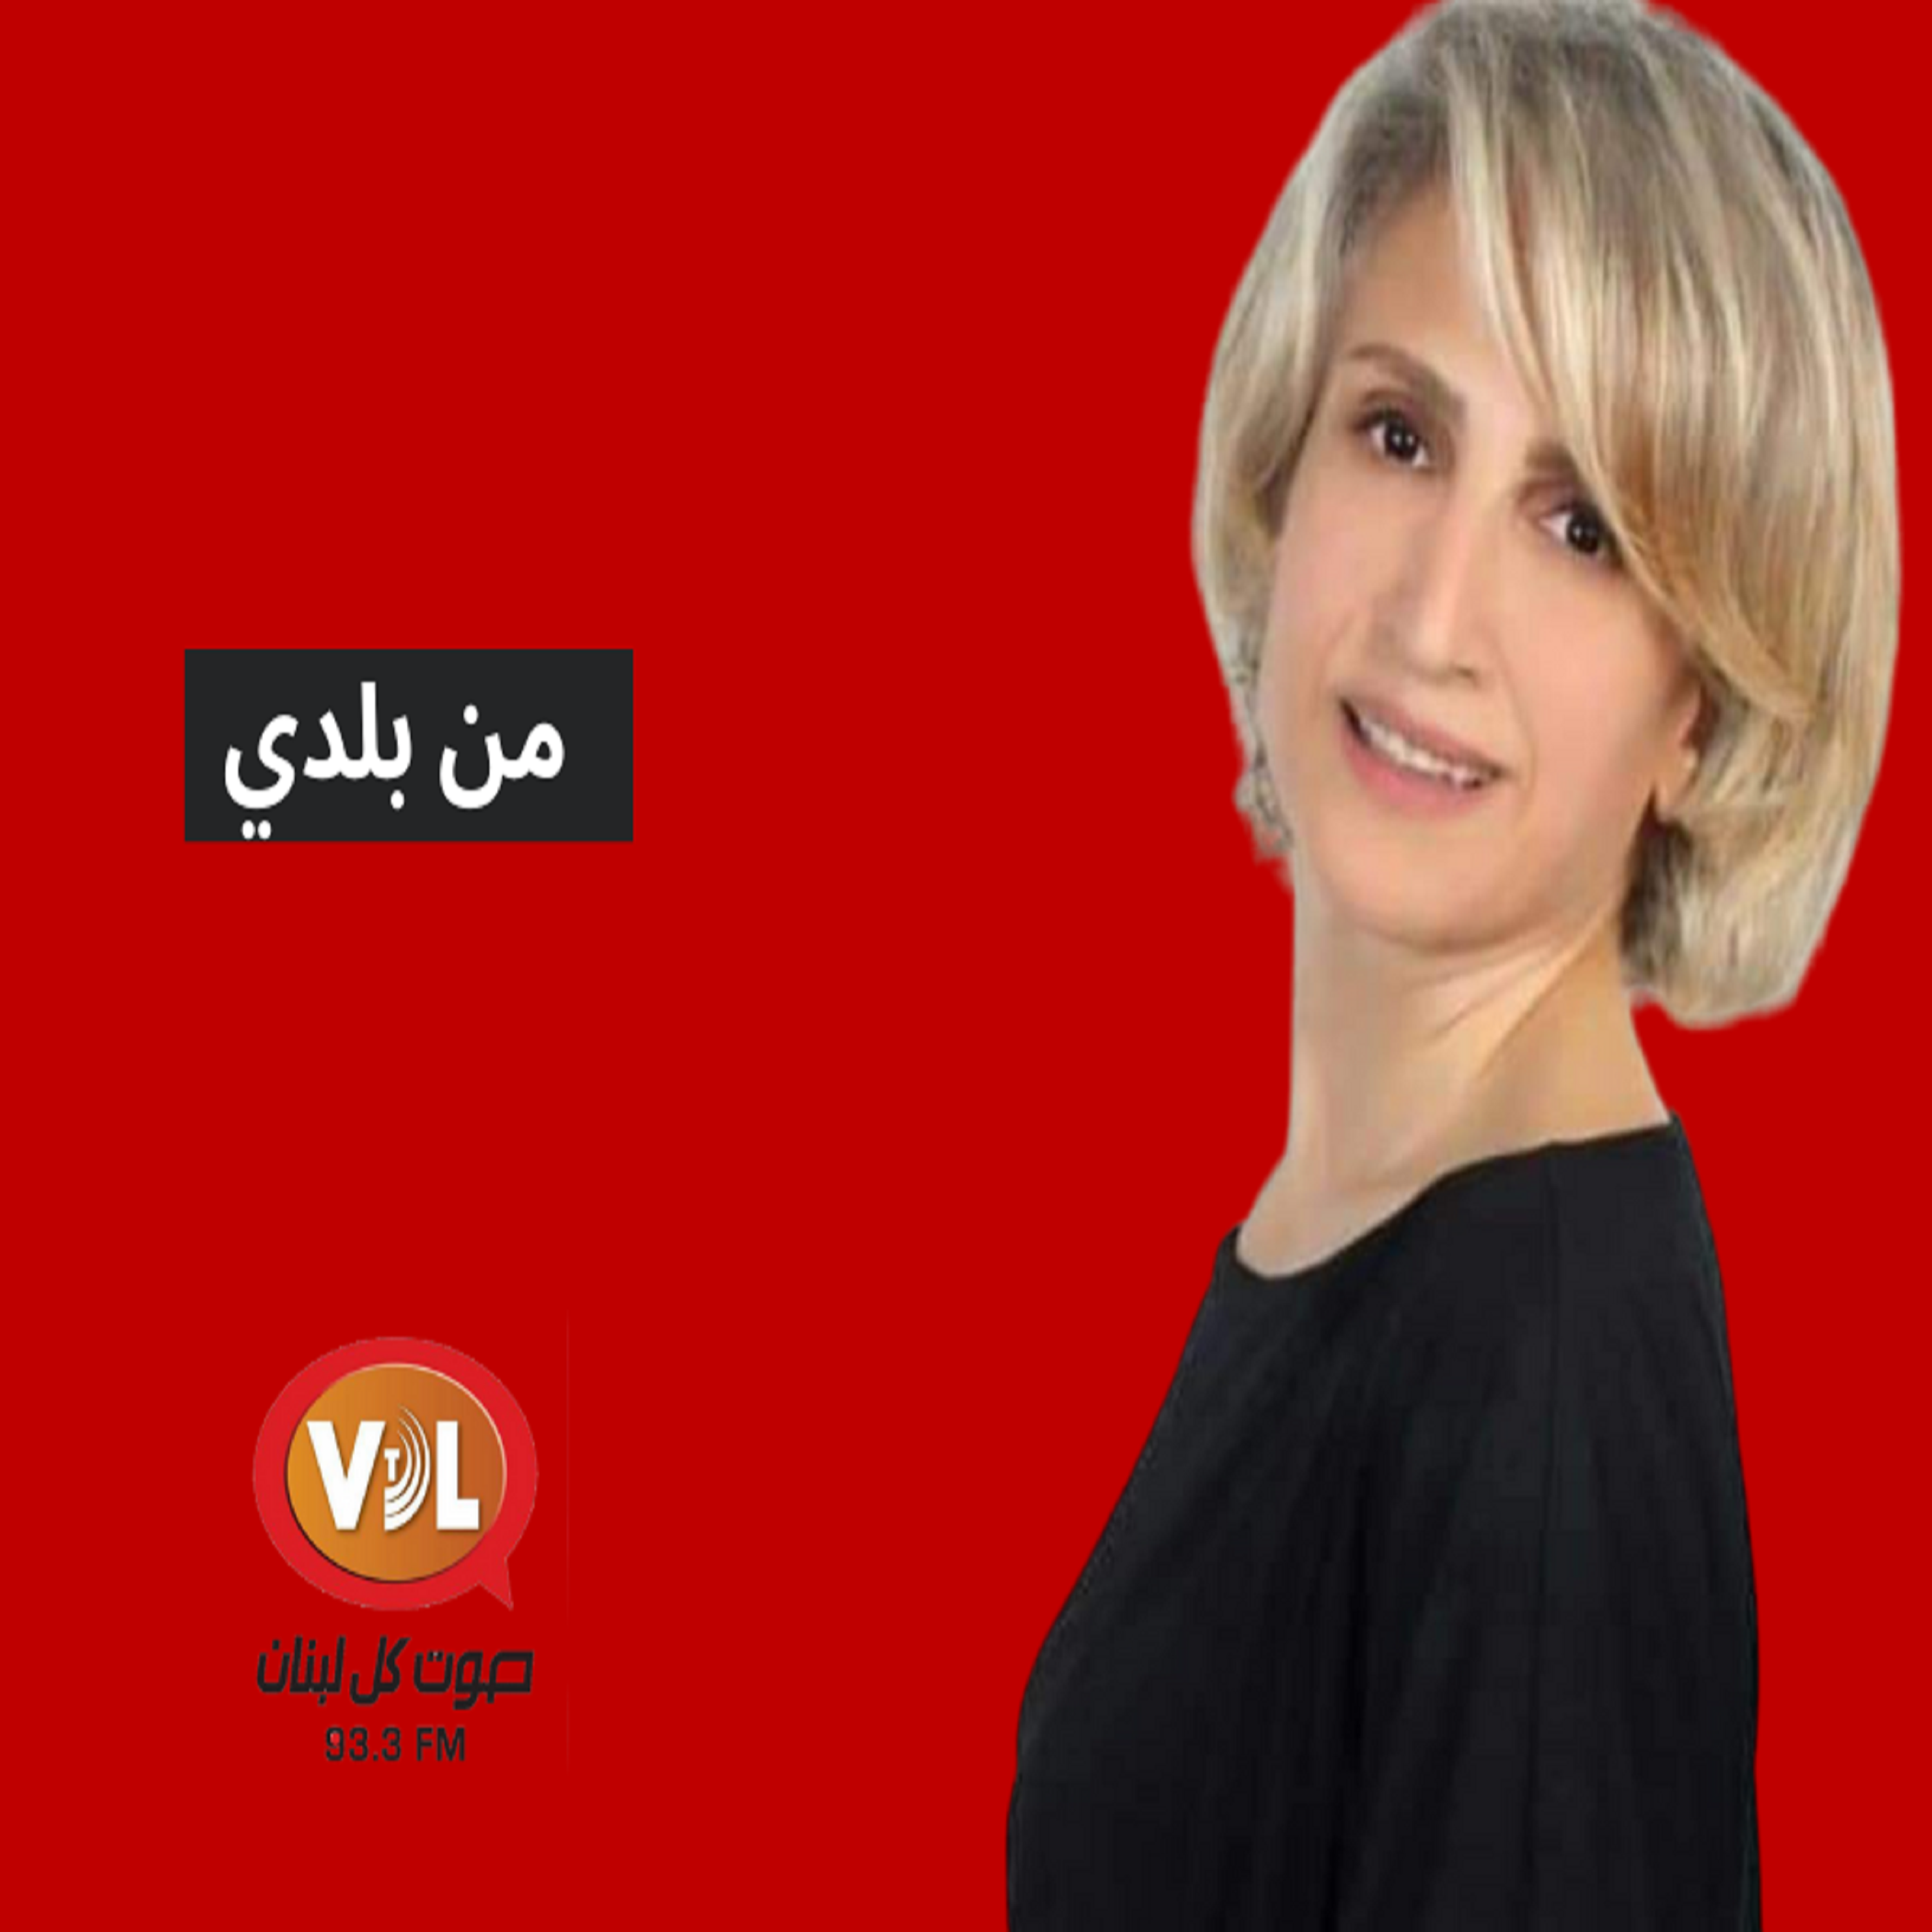 ضيف الحلقة رئيس بلدية عاليه وجدي مراد 